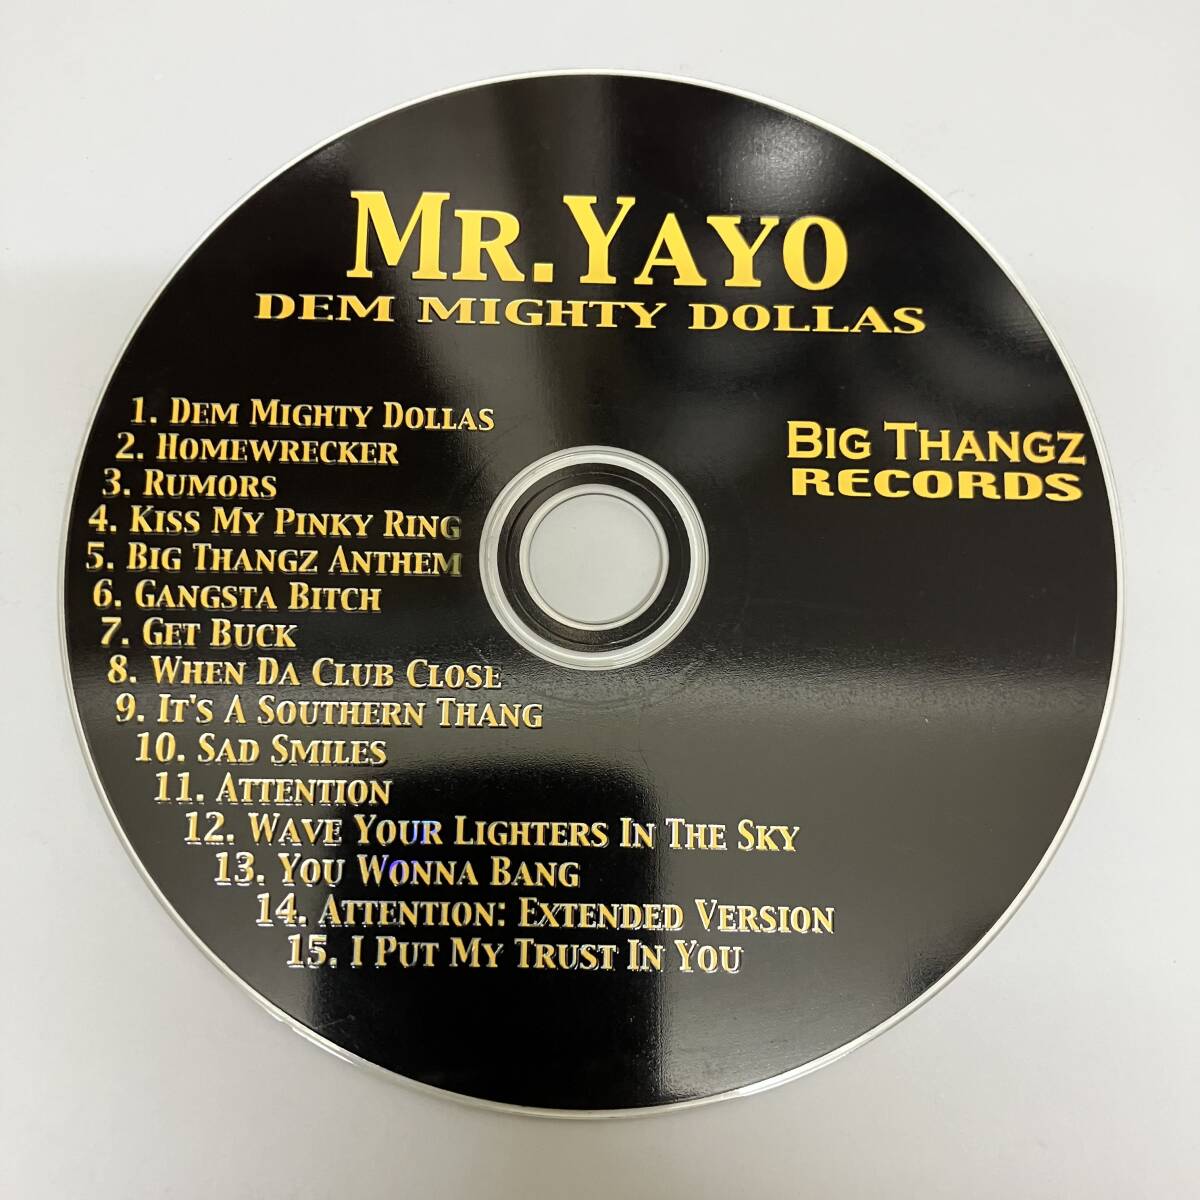 裸25 HIPHOP,R&B MR. YAYO - DEM MIGHTY DOLLAS アルバム CD 中古品_画像1